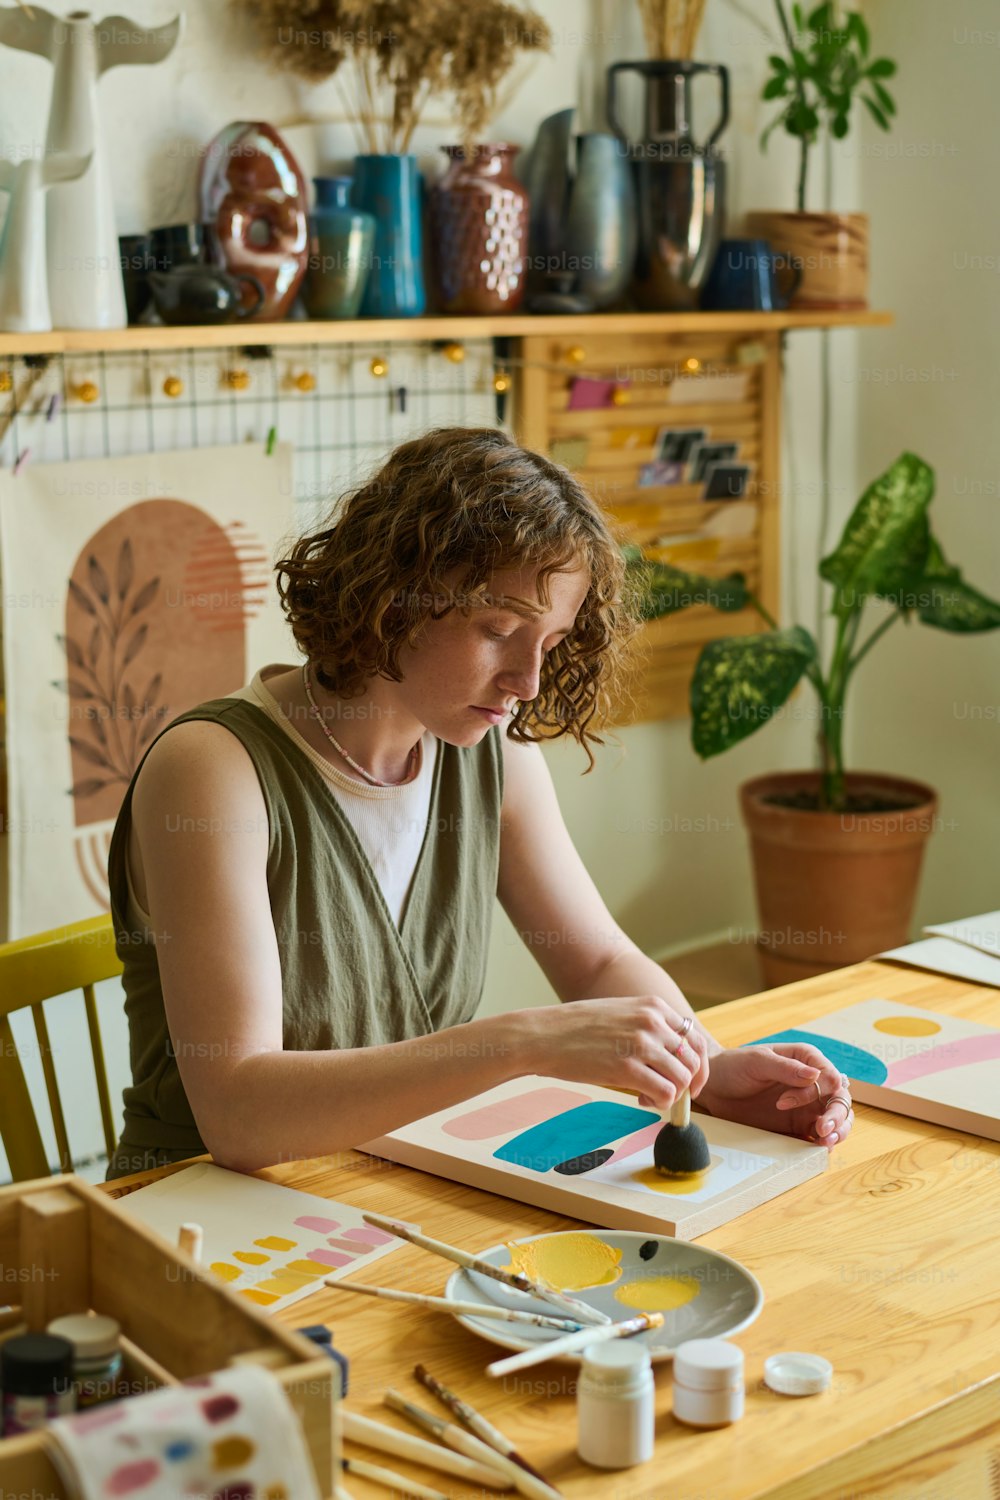 Artiste féminine créative en tenue décontractée utilisant une éponge pour appliquer de la couleur sur du papier tout en travaillant sur une nouvelle peinture abstraite dans un atelier